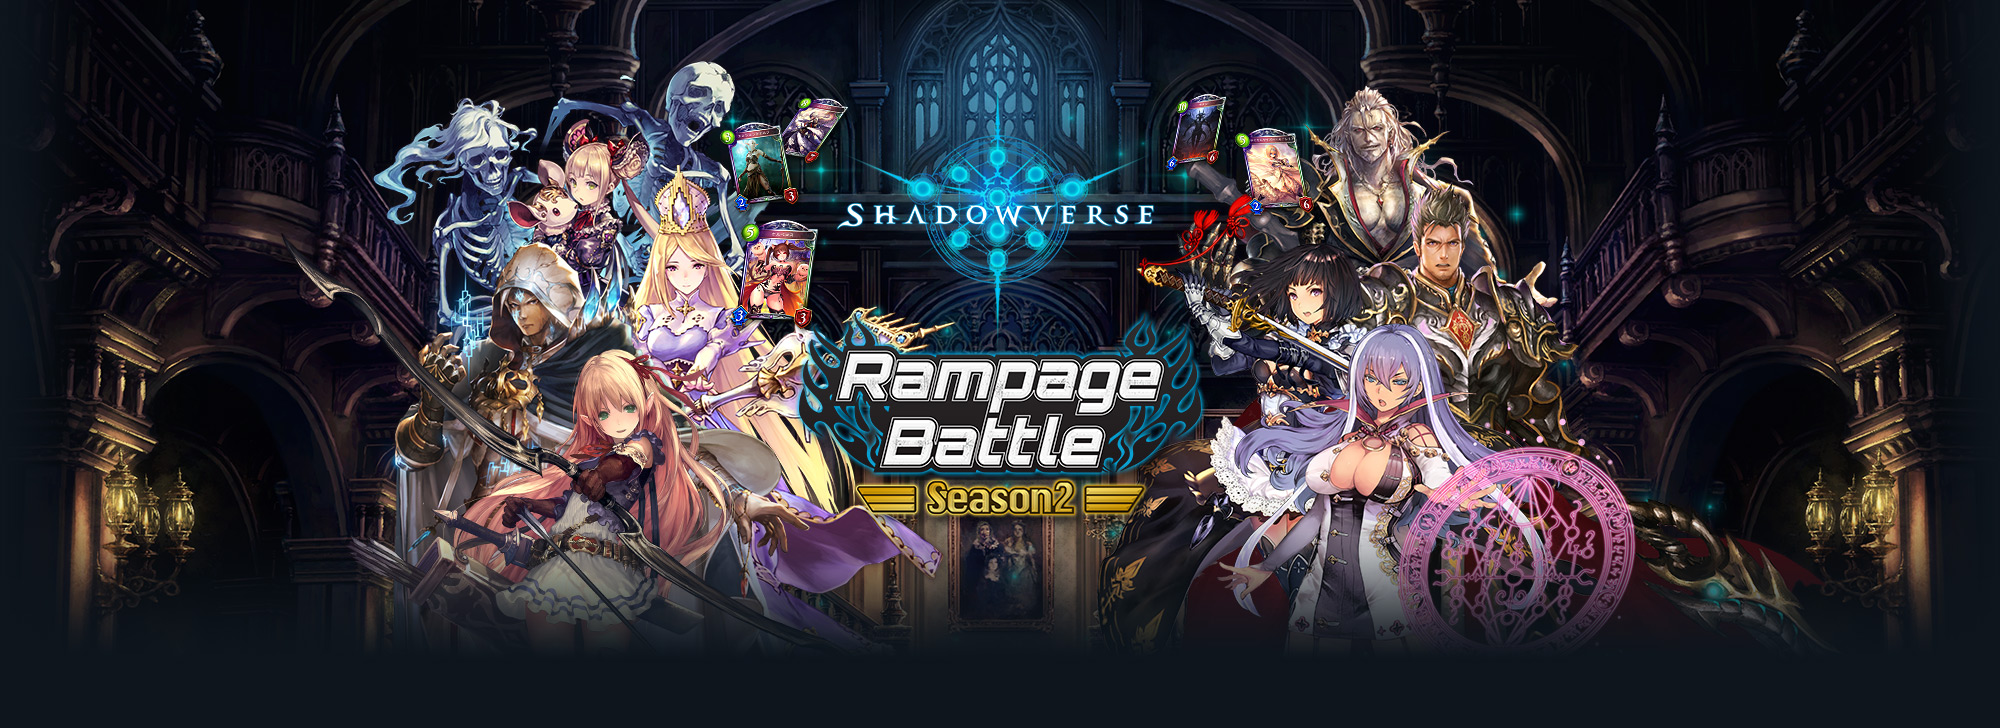 シャドウバース オフライン店舗大会 Shadowverse Rampage Battle Season2 8月大会情報と特典追加のご案内 株式会社テクノブラッドのプレスリリース